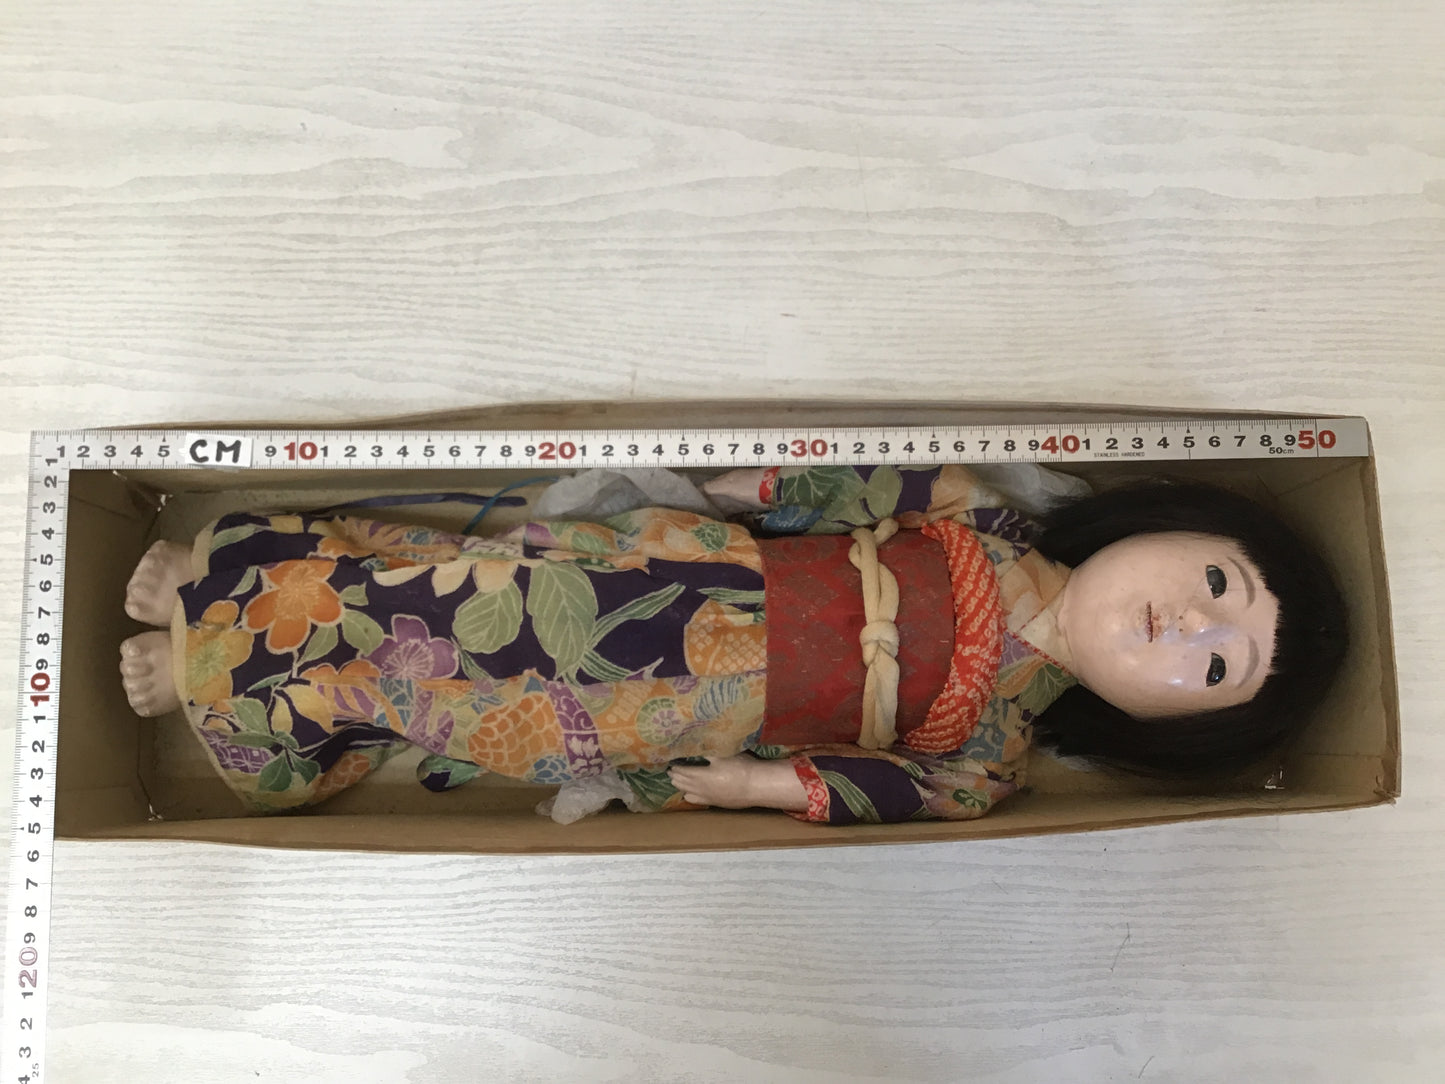 Y1977 NINGYO Ichimatsu Doll girl toy signed box Japanese vintage antique